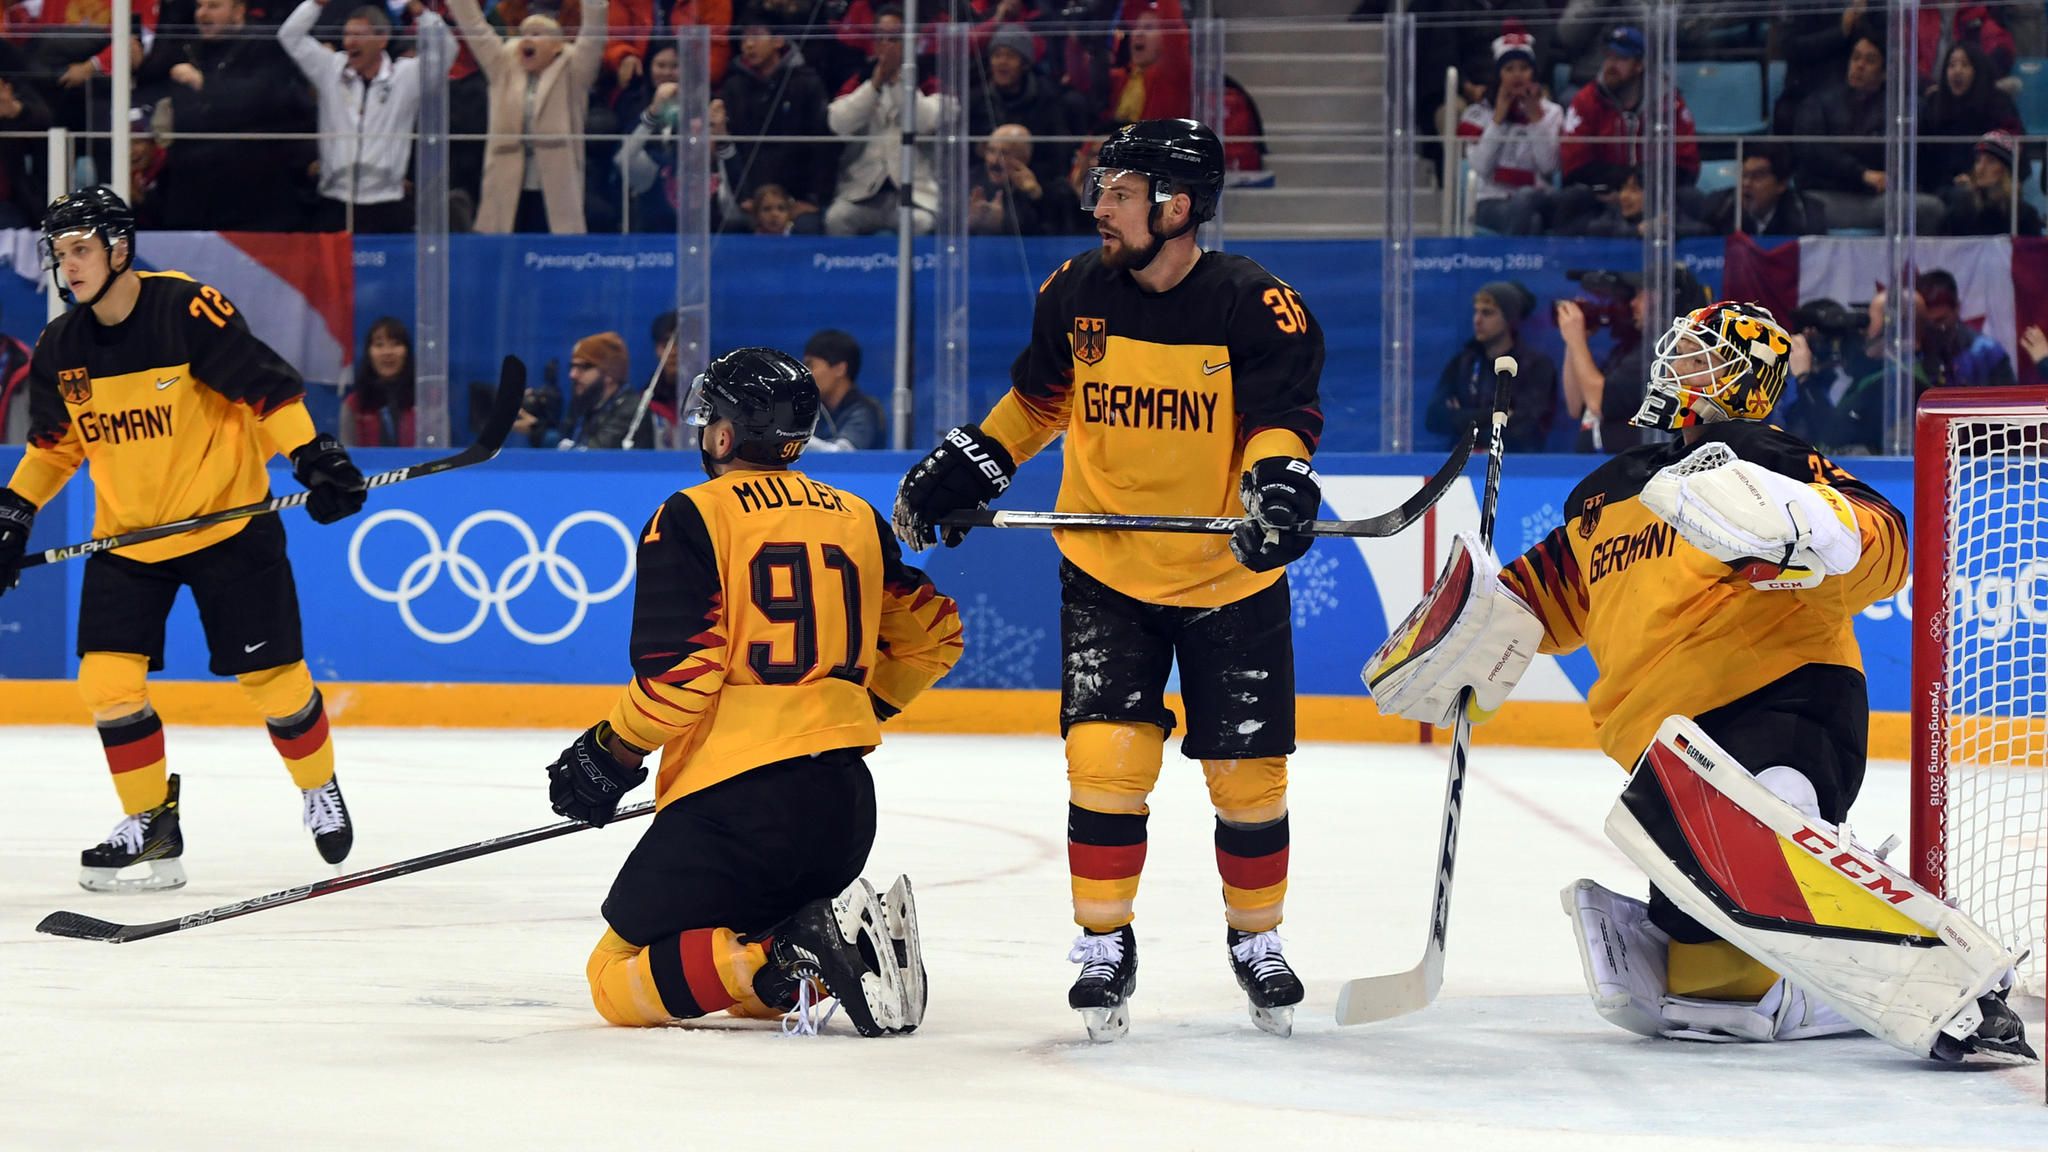 Eishockey bei Olympia Deutschland verpasst Gold nach Verlängerung